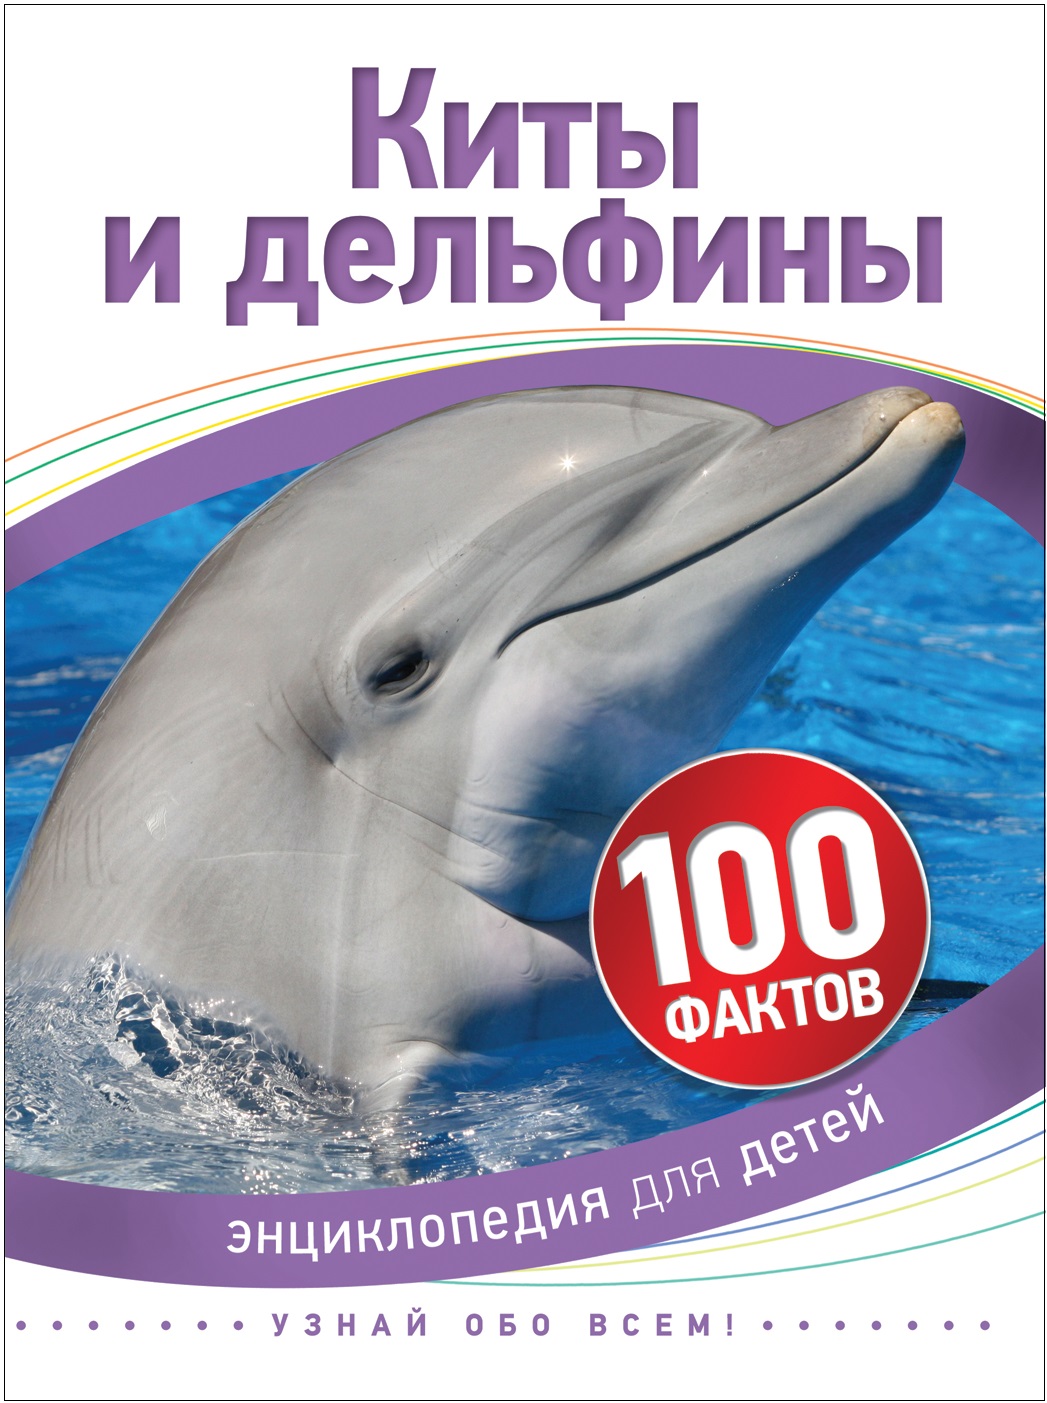 Книга 35069 "Киты и дельфины" 100 фактов Росмэн - Уфа 